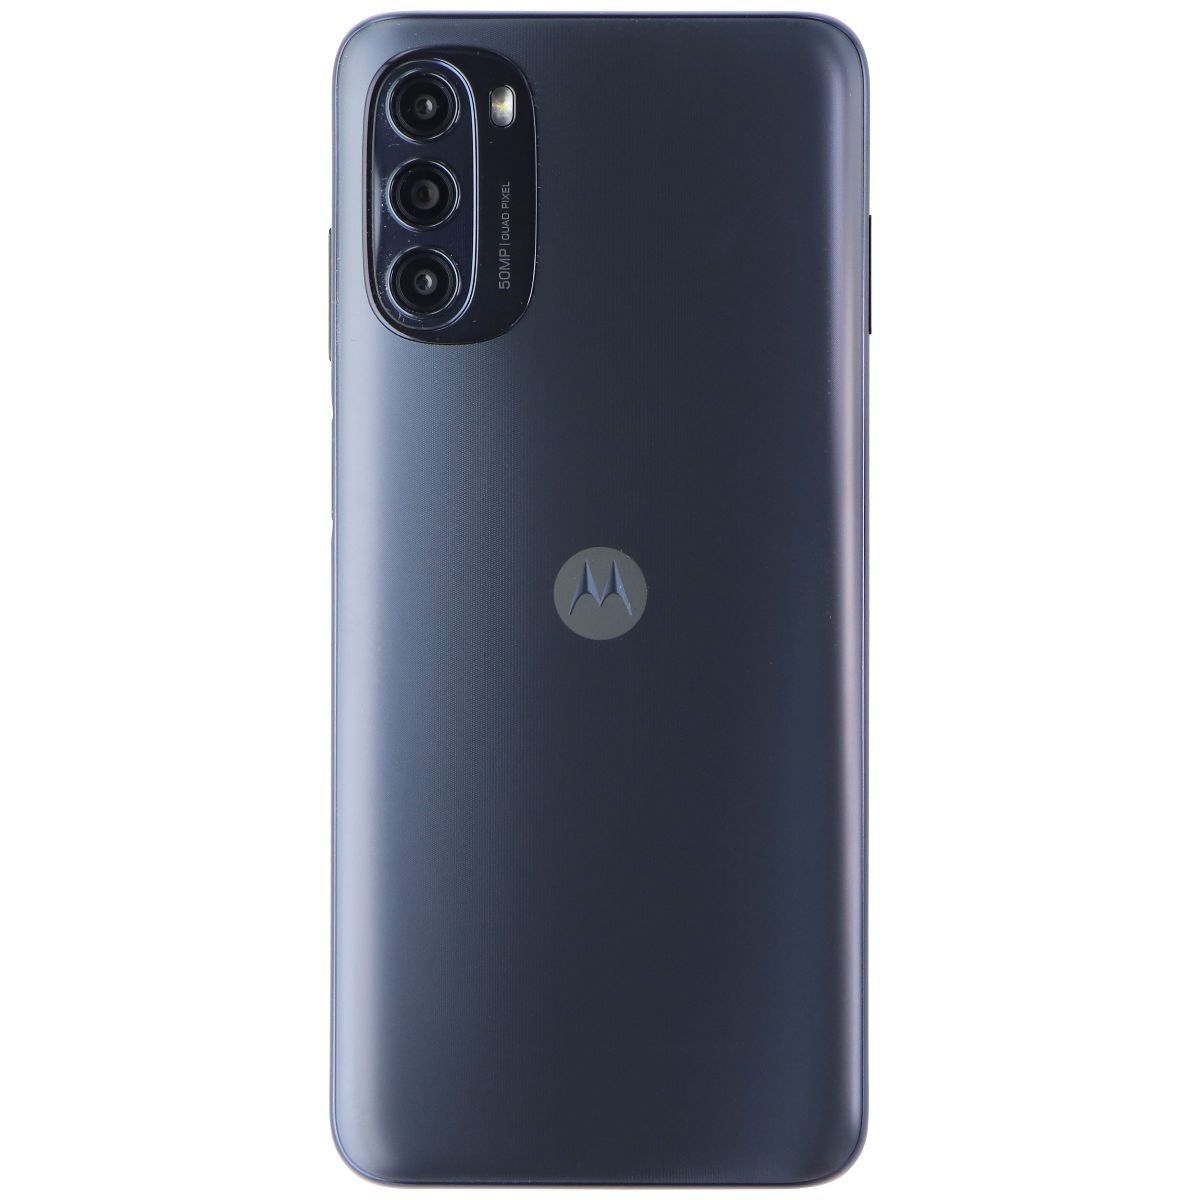 Motorola Moto G (2022) 6.5-in (XT2213-3) Unlocked - Moonlight Gray/64GB Cell Phones & Smartphones Motorola    - Simple Cell Bulk Wholesale Pricing - USA Seller